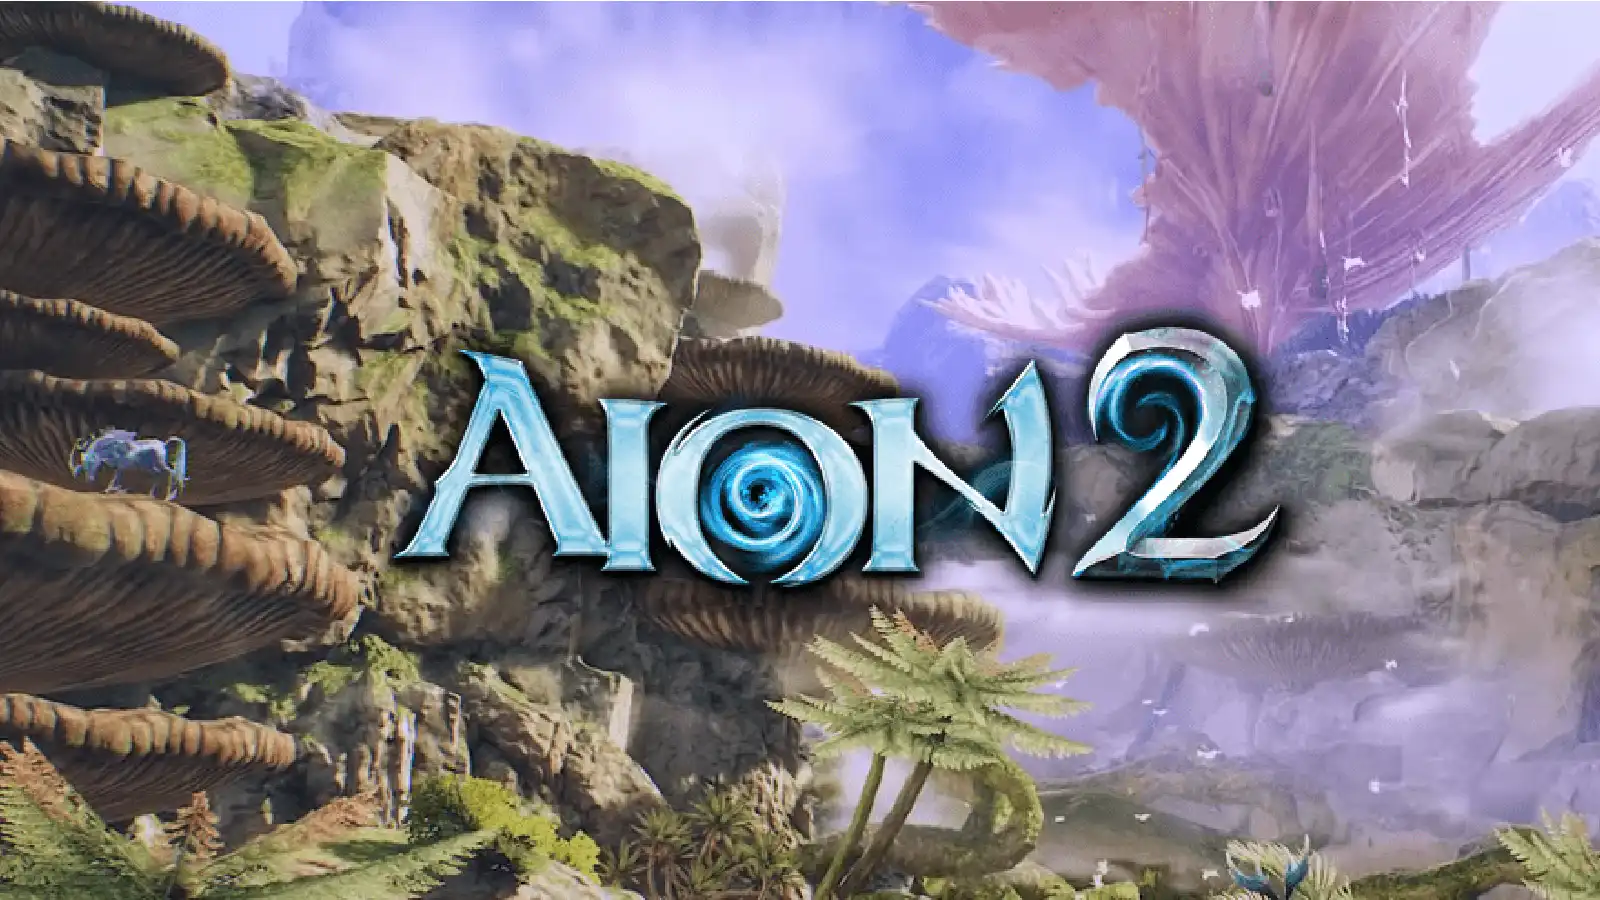 Aion 2 выйдет по всему миру и будет доступен на ПК!